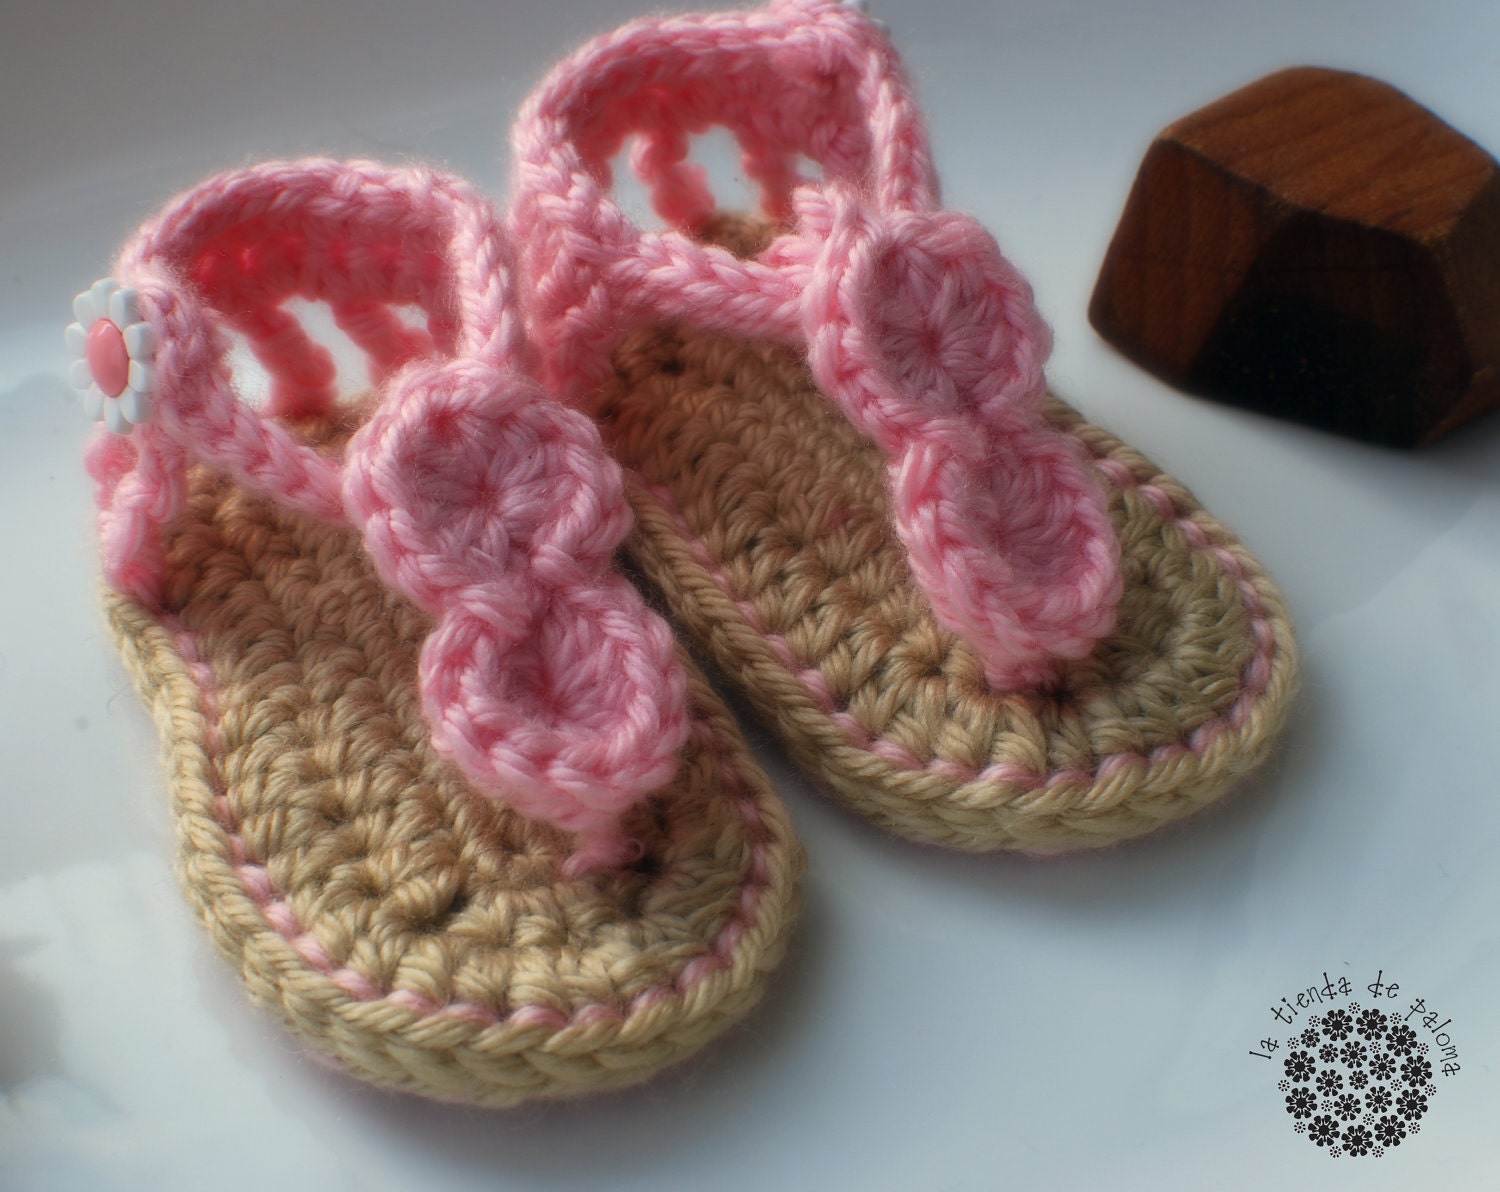 baby crochet sandals